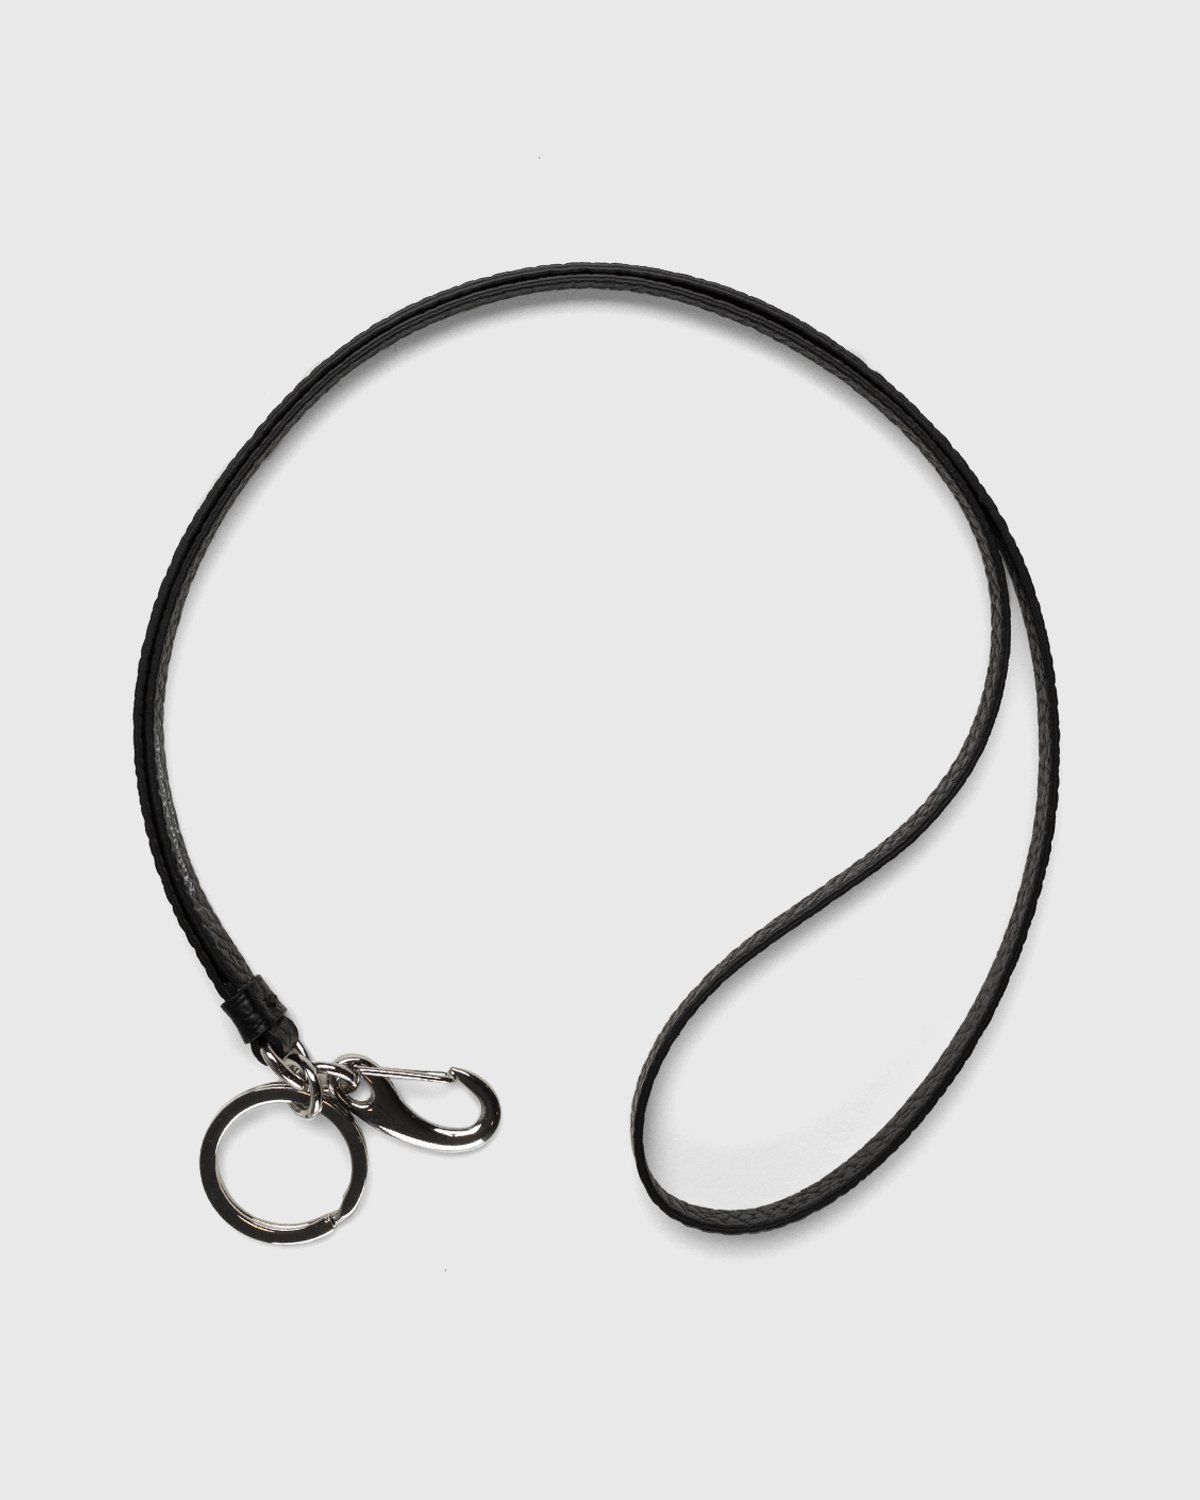 Maison Margiela – Leather Lanyard Black - Keychains - Black - Image 4